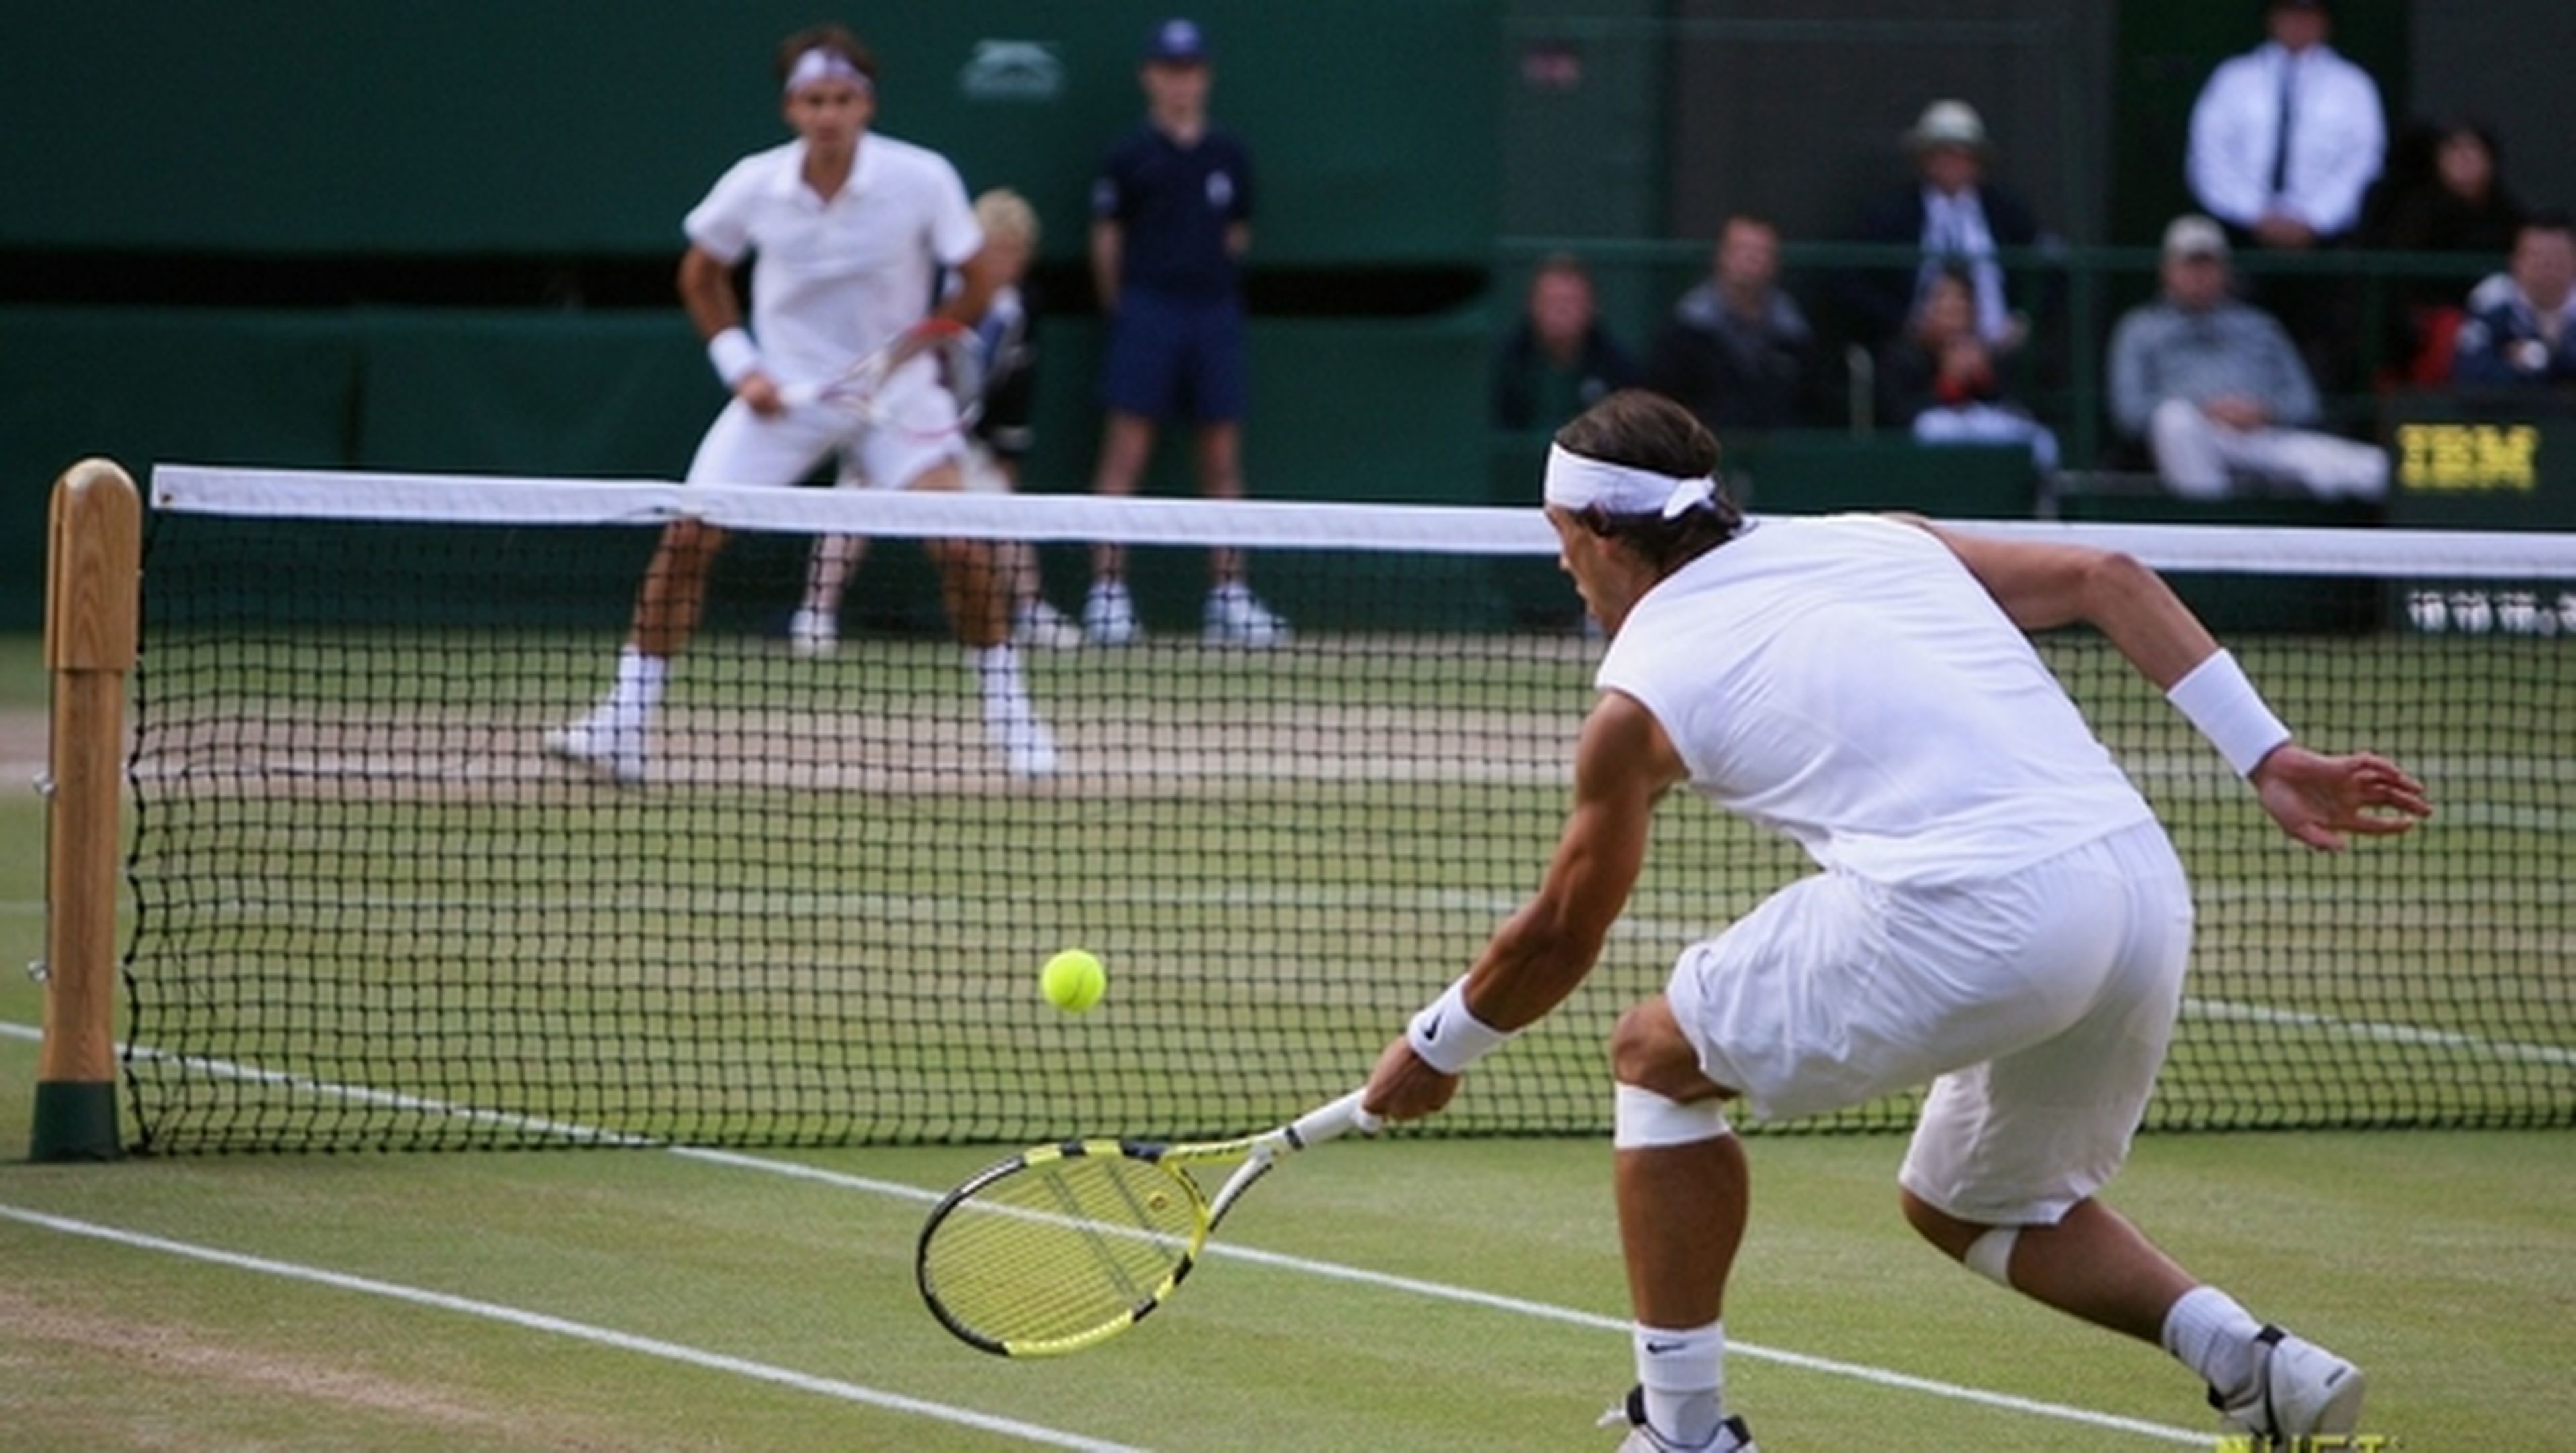 El torneo de Wimbledon usará Twitter para subir tuits, fotos y vídeos de los partidos de tenis a las redes sociales, en tiempo real.